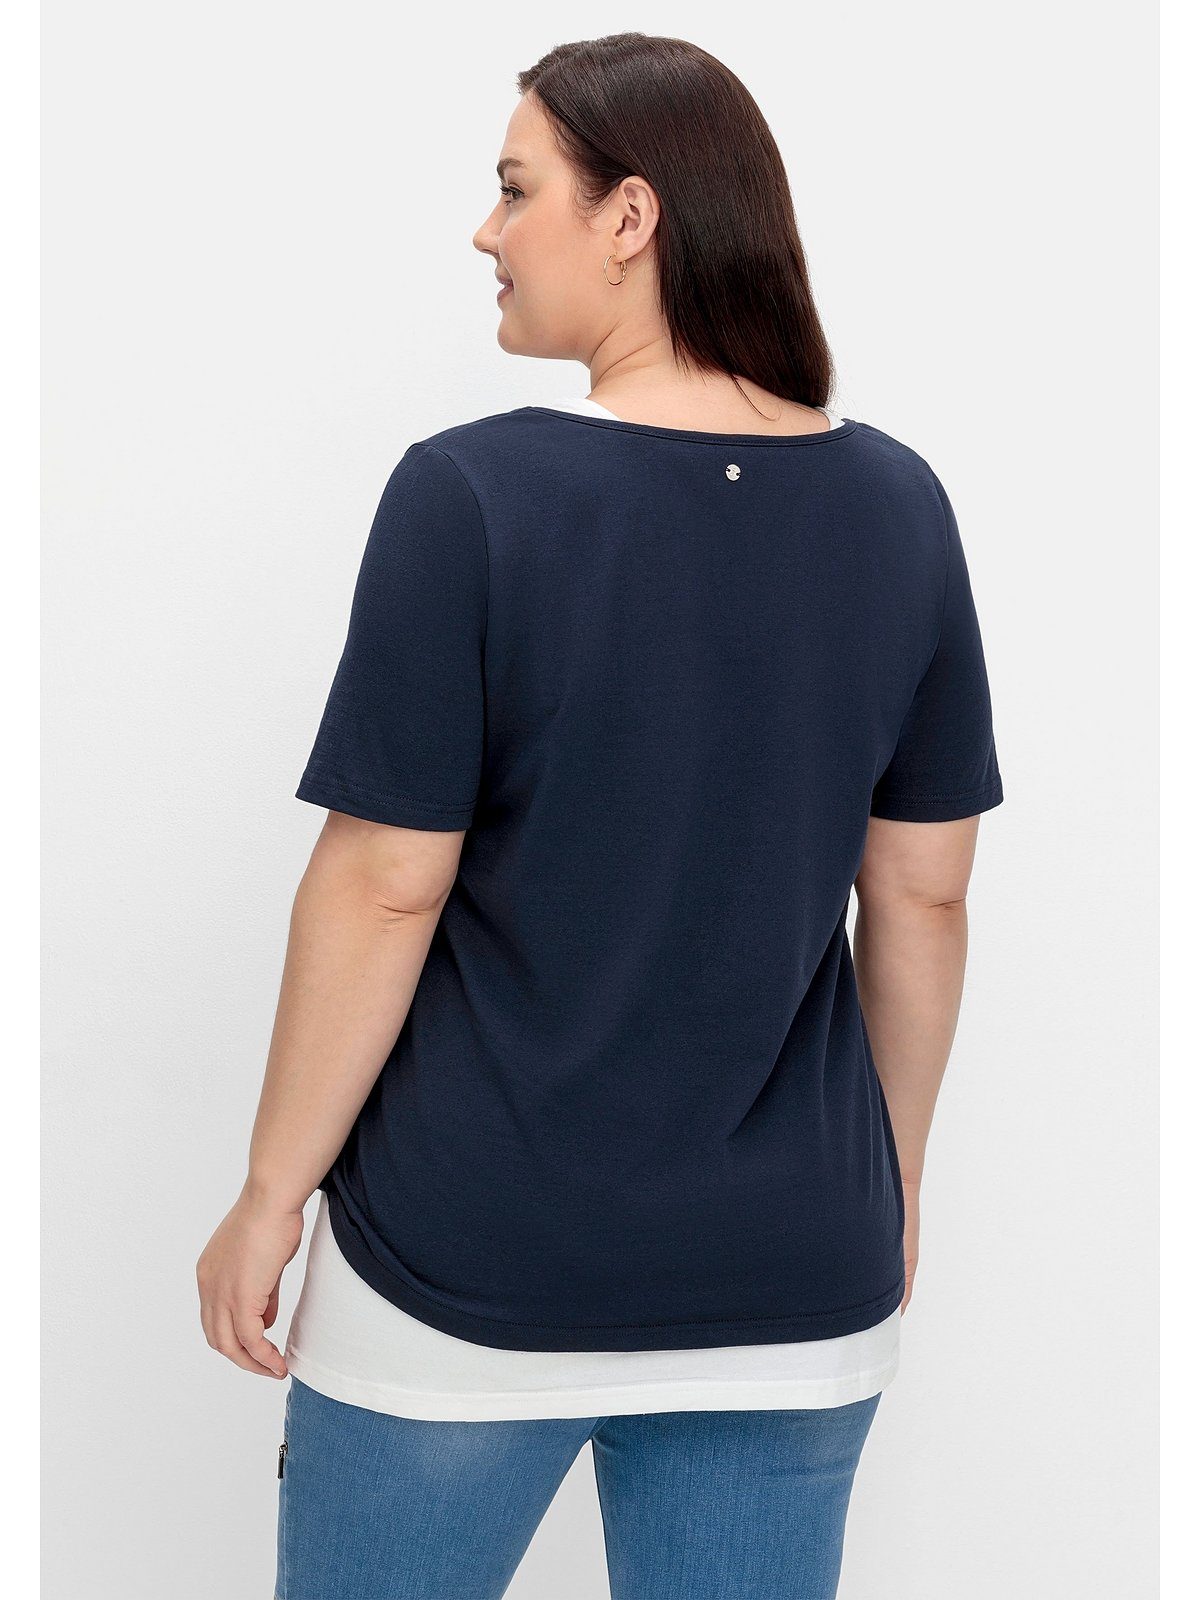 Sheego T-Shirt Große Größen mit separatem Wordingprint und Top